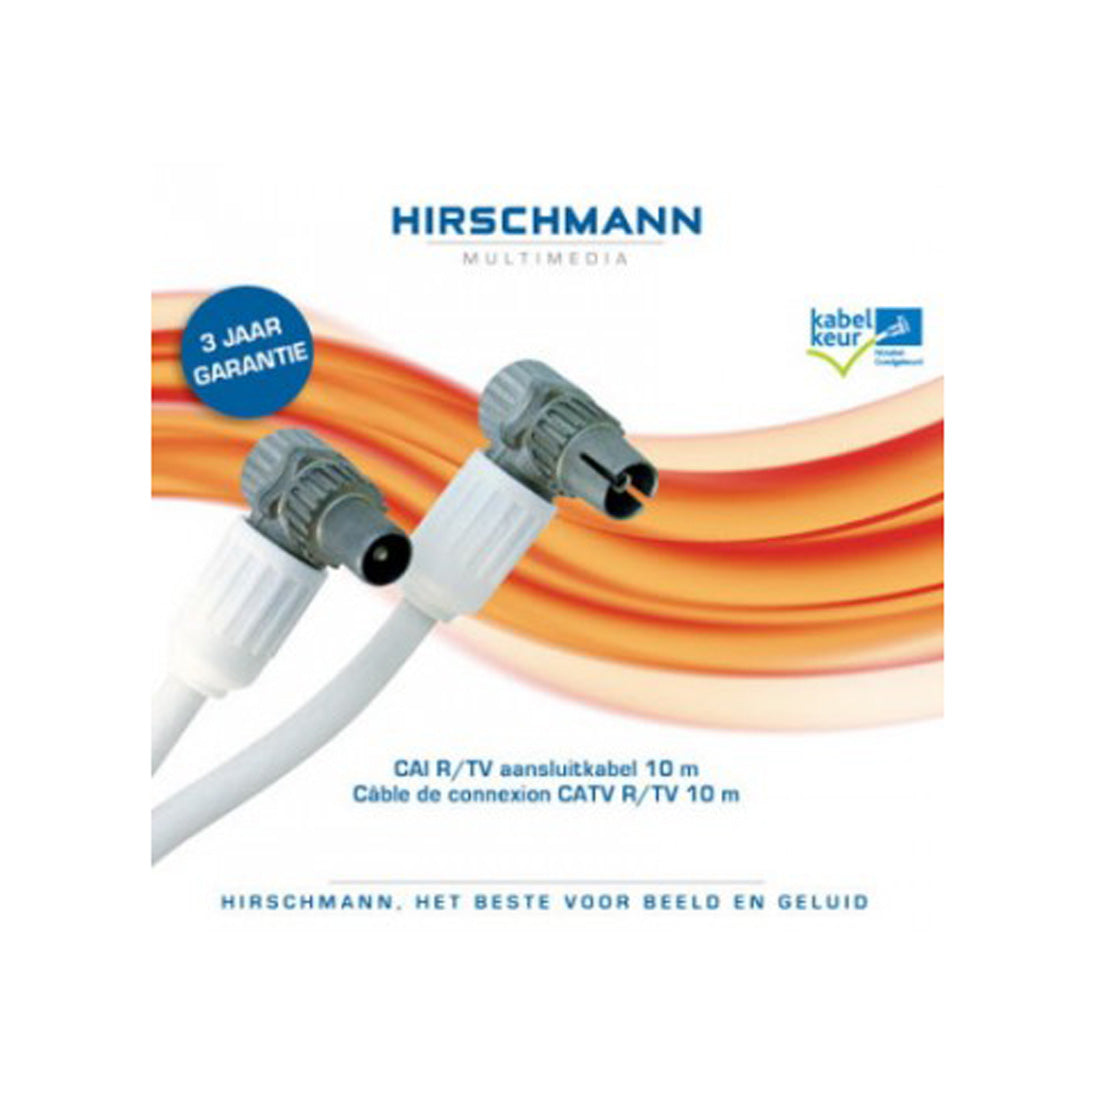 Hirschmann Electronics Cavo di collegamento coassiale con connettori CATV R/TV, 10 m